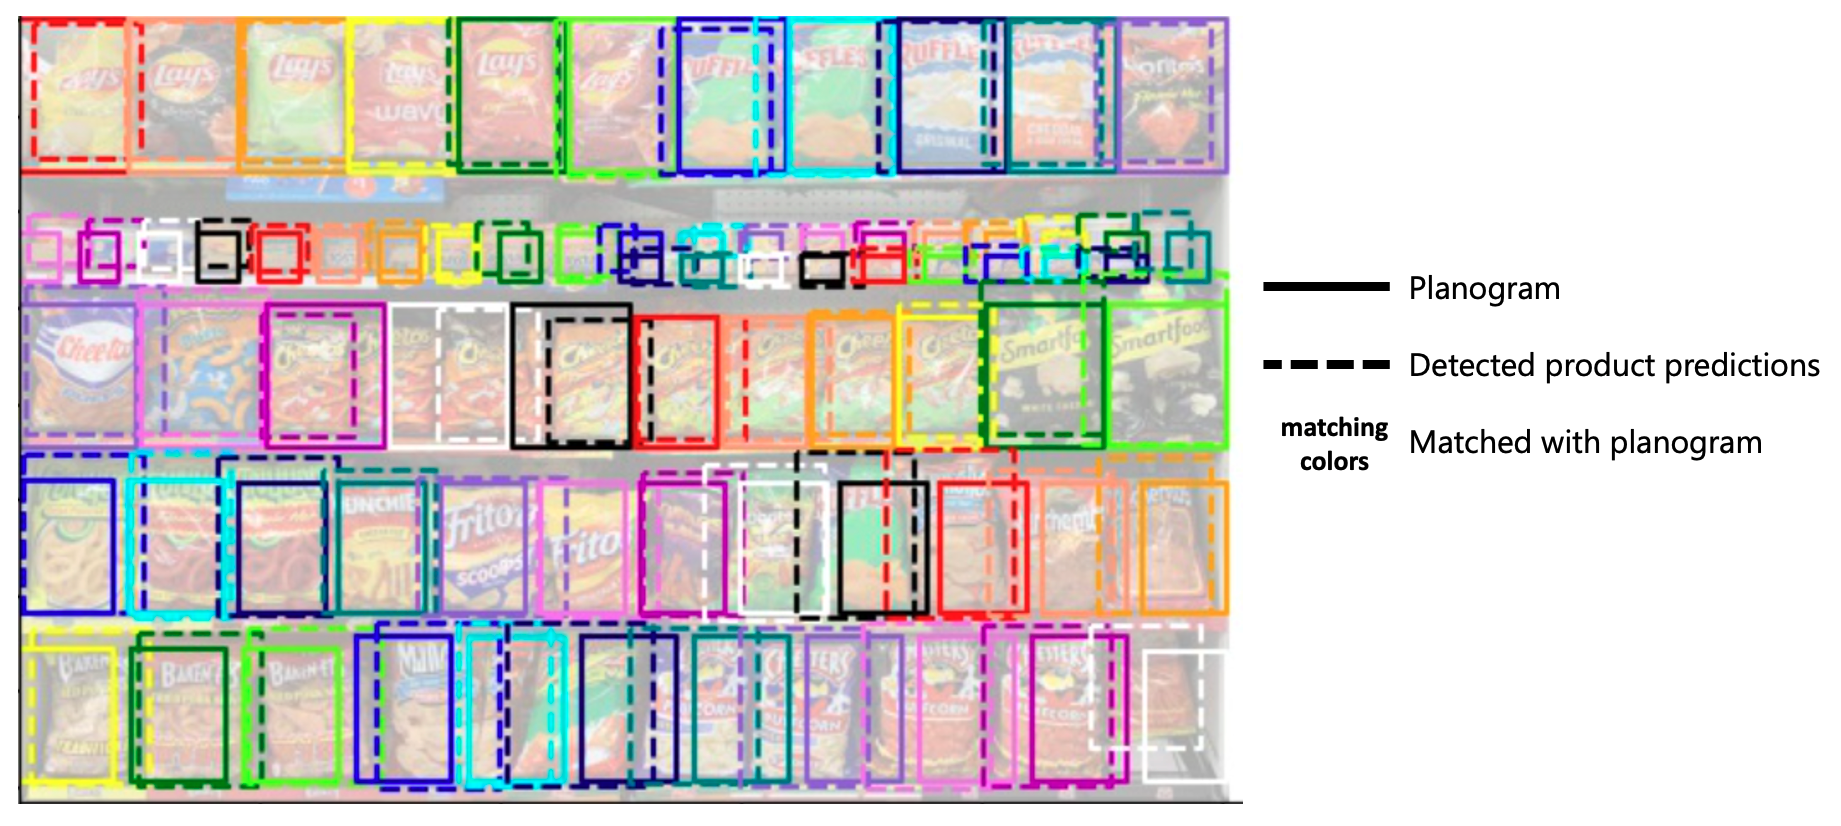 Фотография розничной полки с обнаруженными продуктами, описанными и прямоугольниками положения планограммы, описанными отдельно.